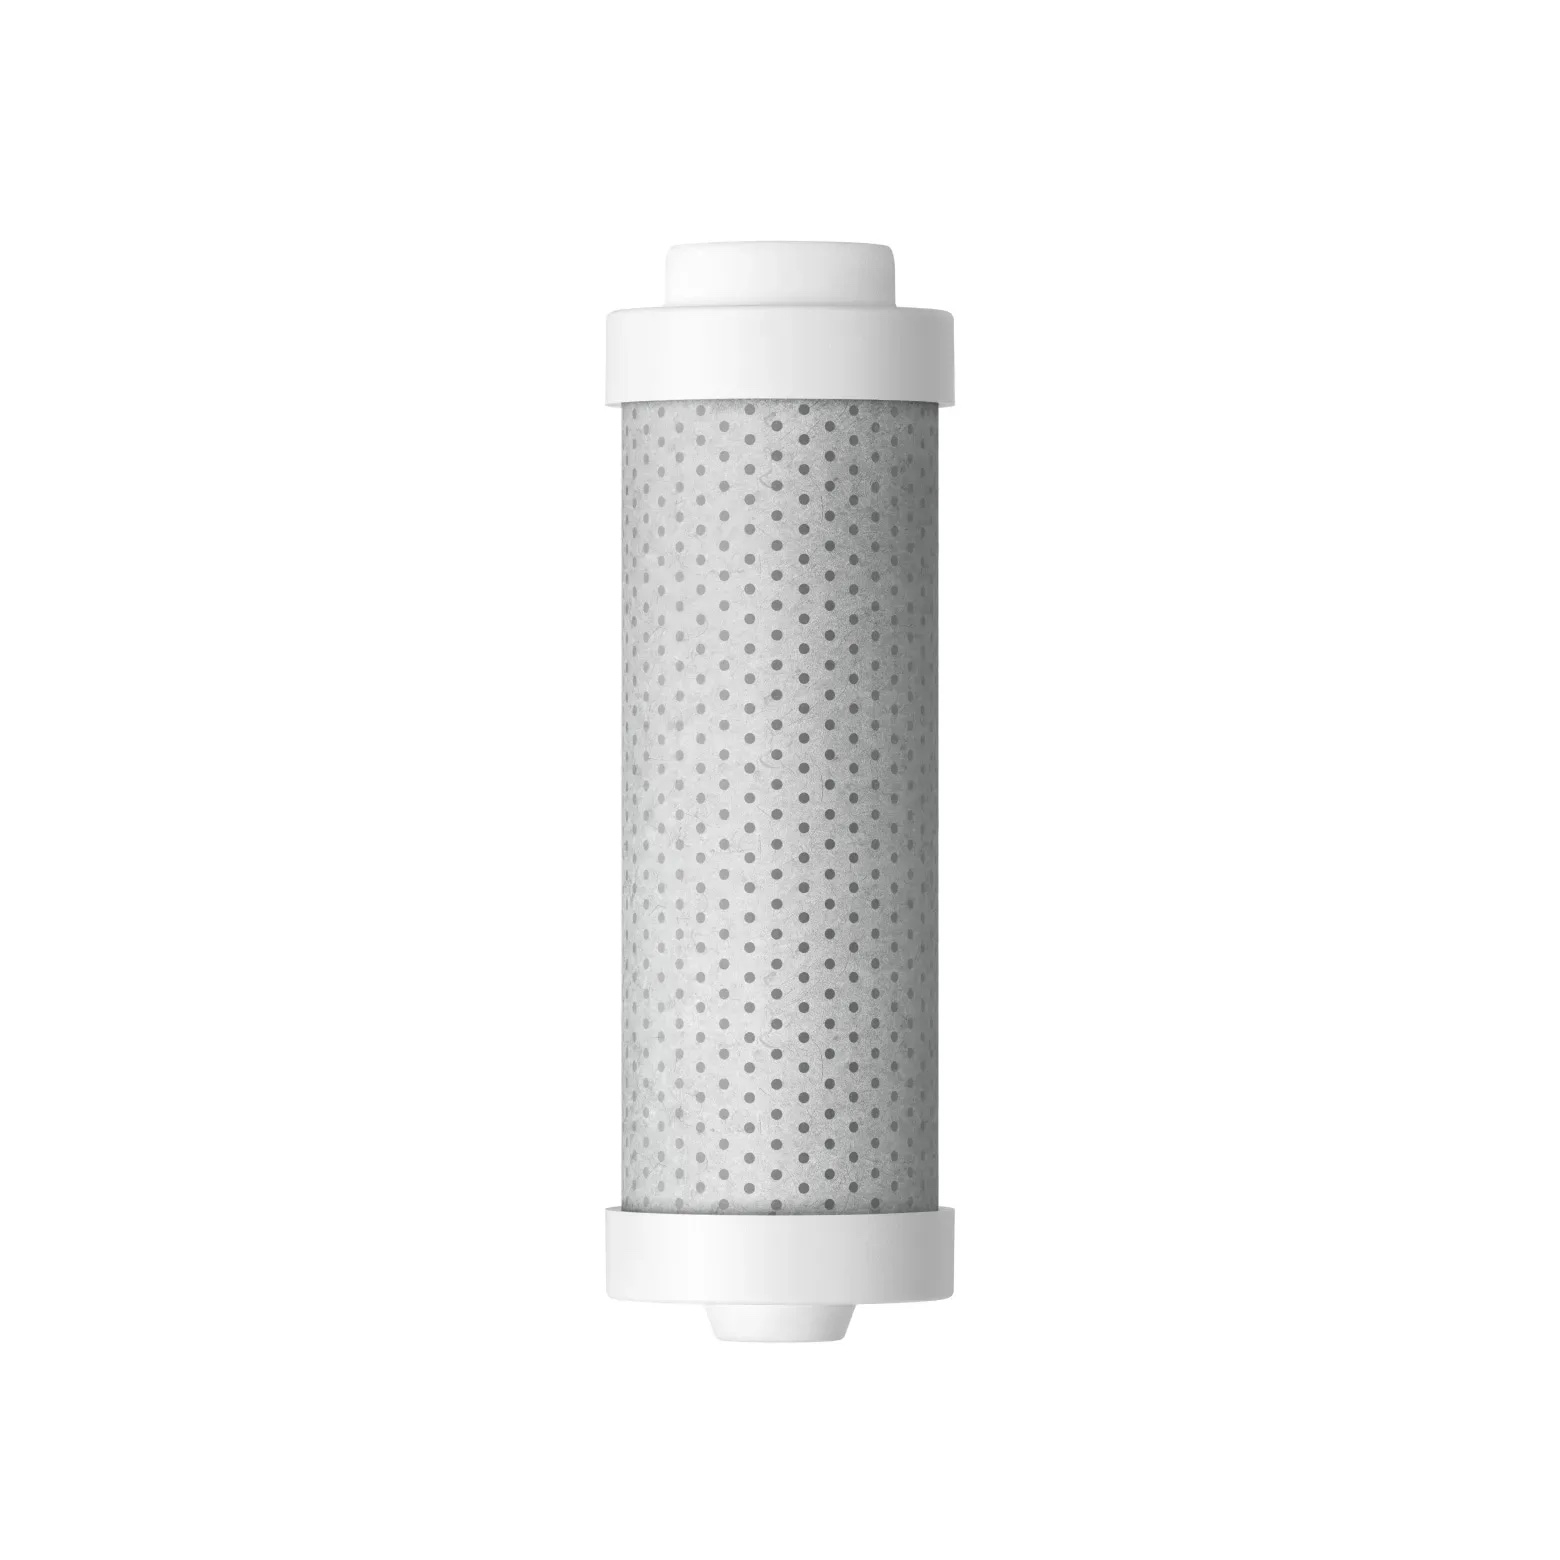 Filtru pentru sticla cu filtrare LARQ (500 și 740 ml) - LARQ